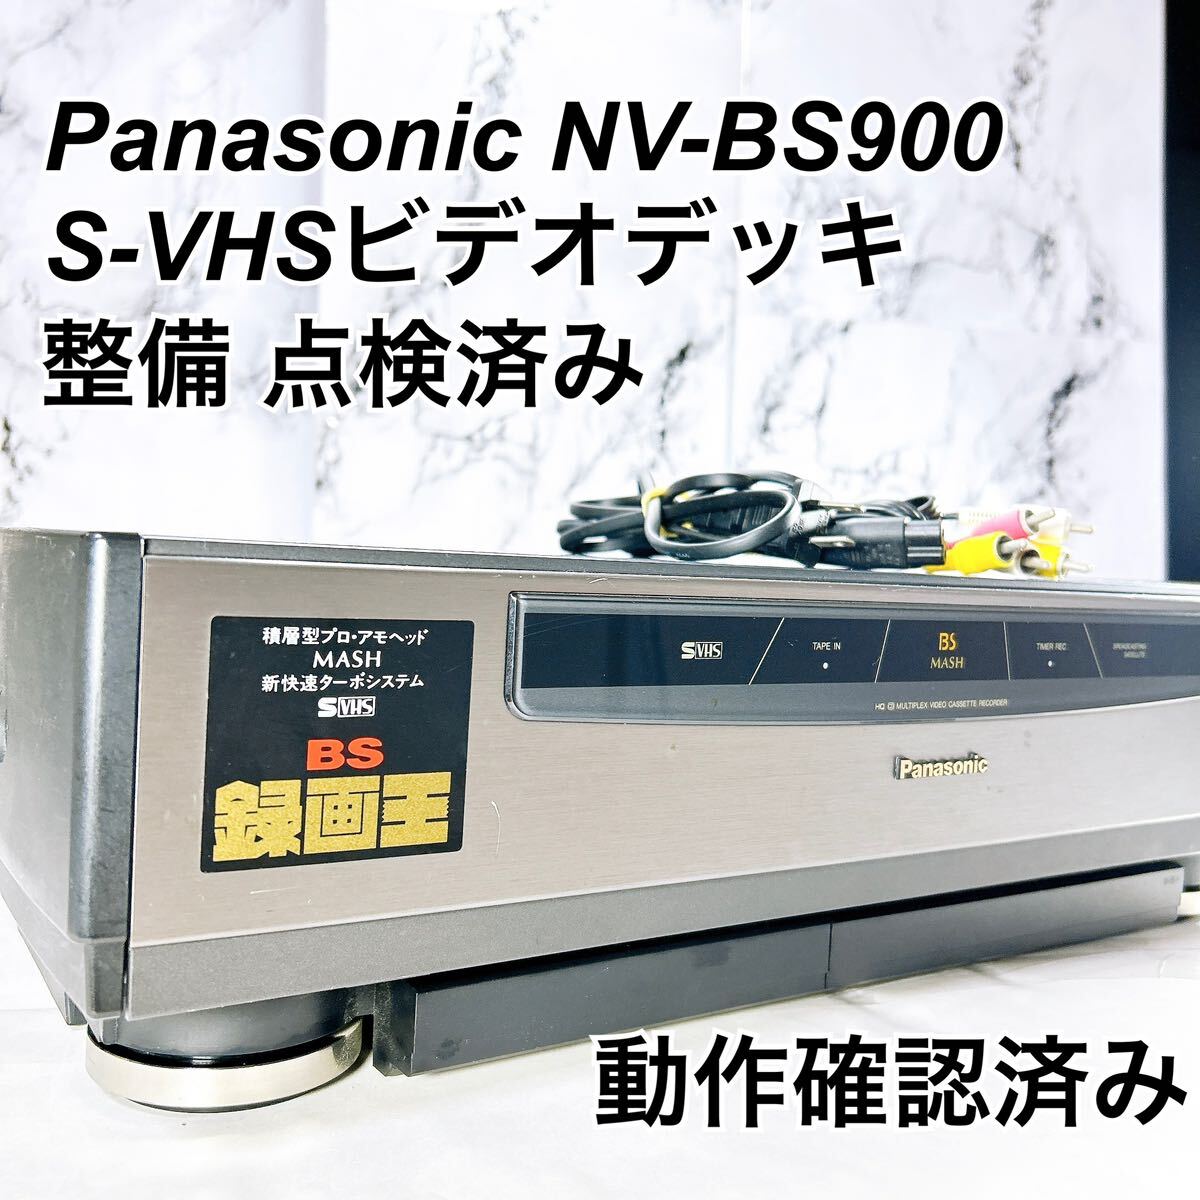 ★メンテナンス済み★ Panasonic S-VHSビデオデッキ NV-BS900_画像1